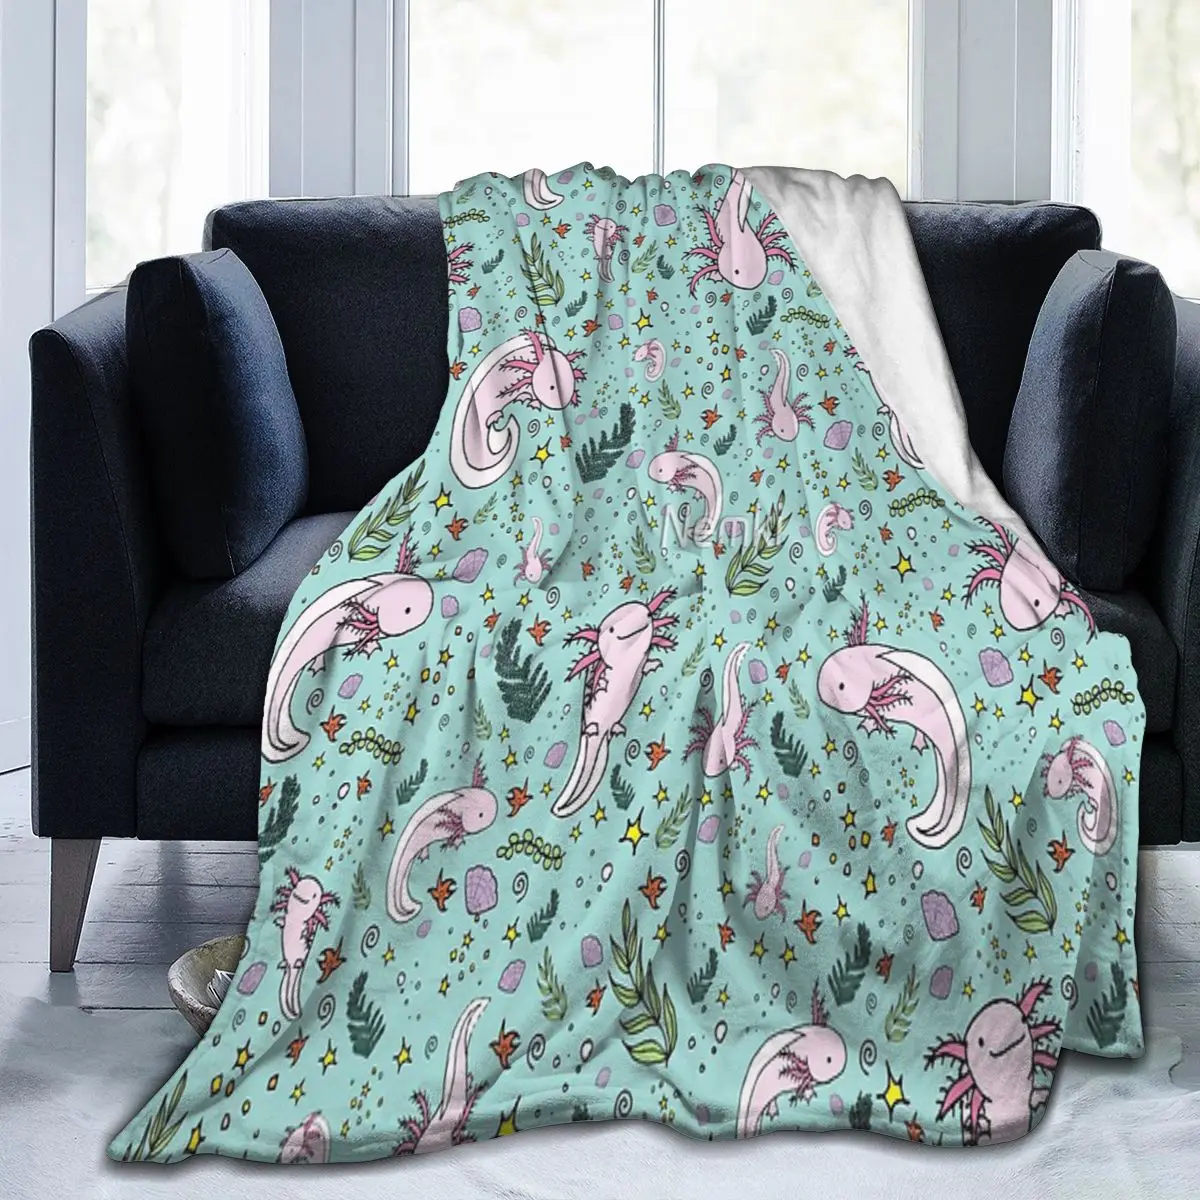 

Одеяло Axolotl, одеяло для лица, ретро одеяло, нескользящее одеяло разных размеров